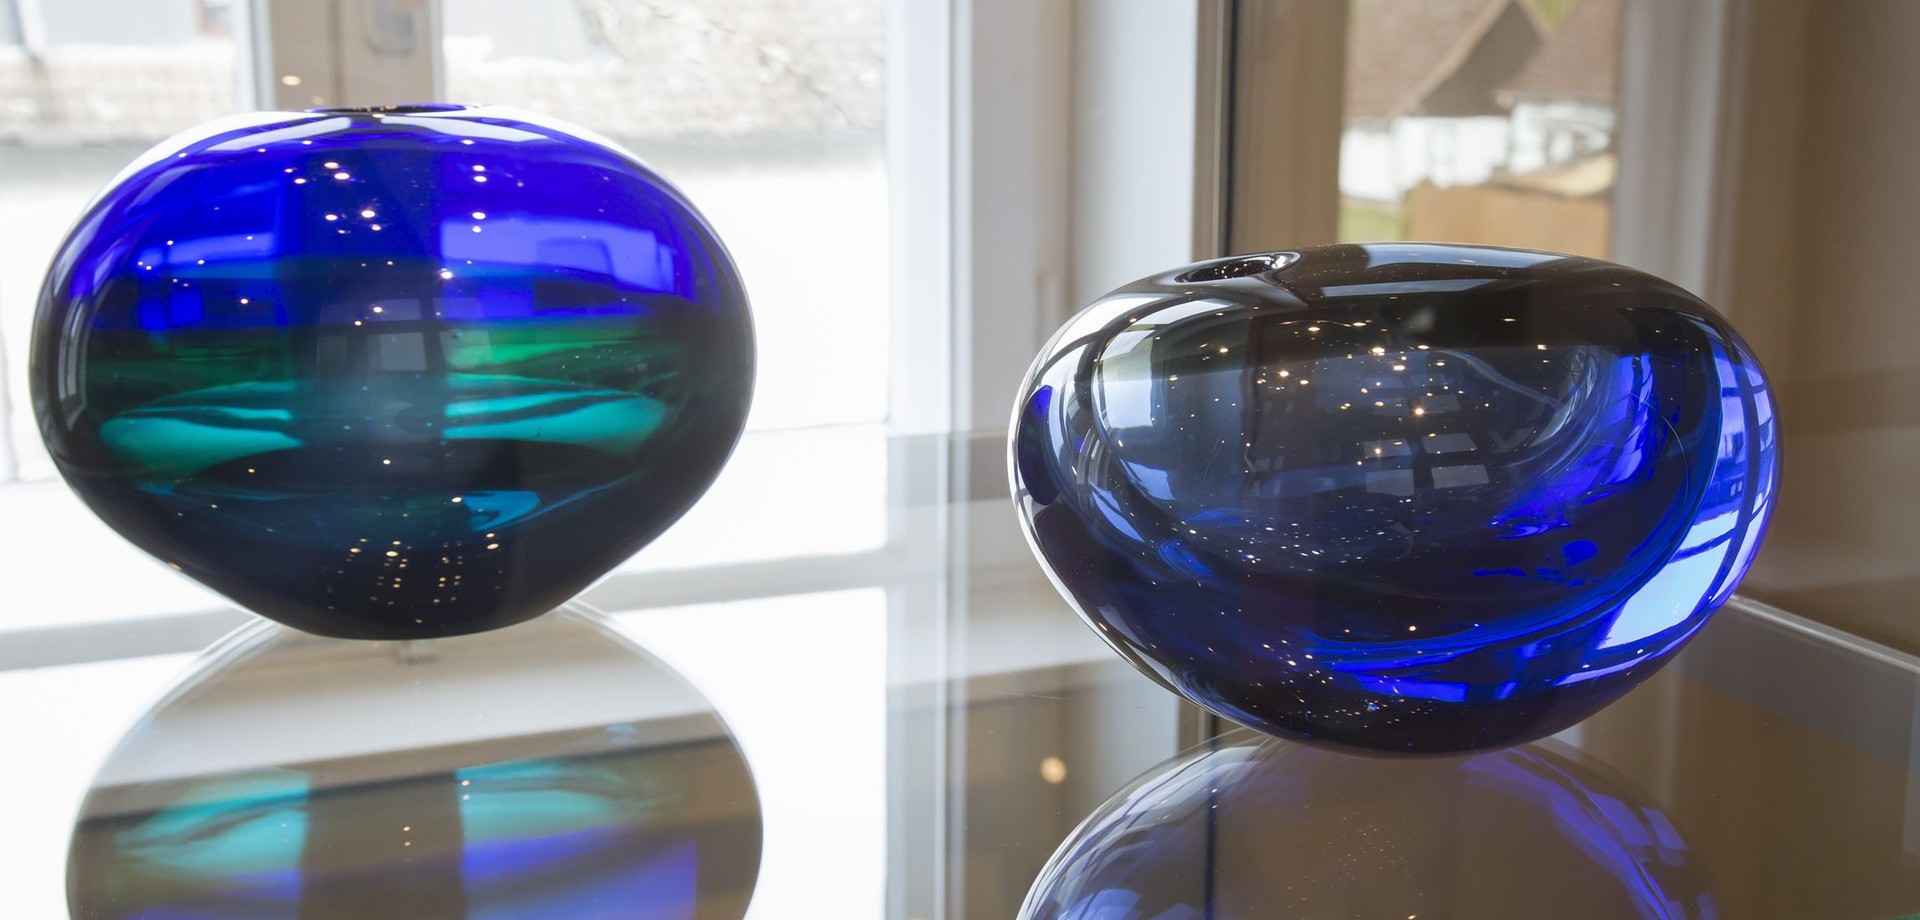 Zwei türkis-blaue kugelförmige Glasvasen des finnischen Künstlers Timo Sarpaneva.